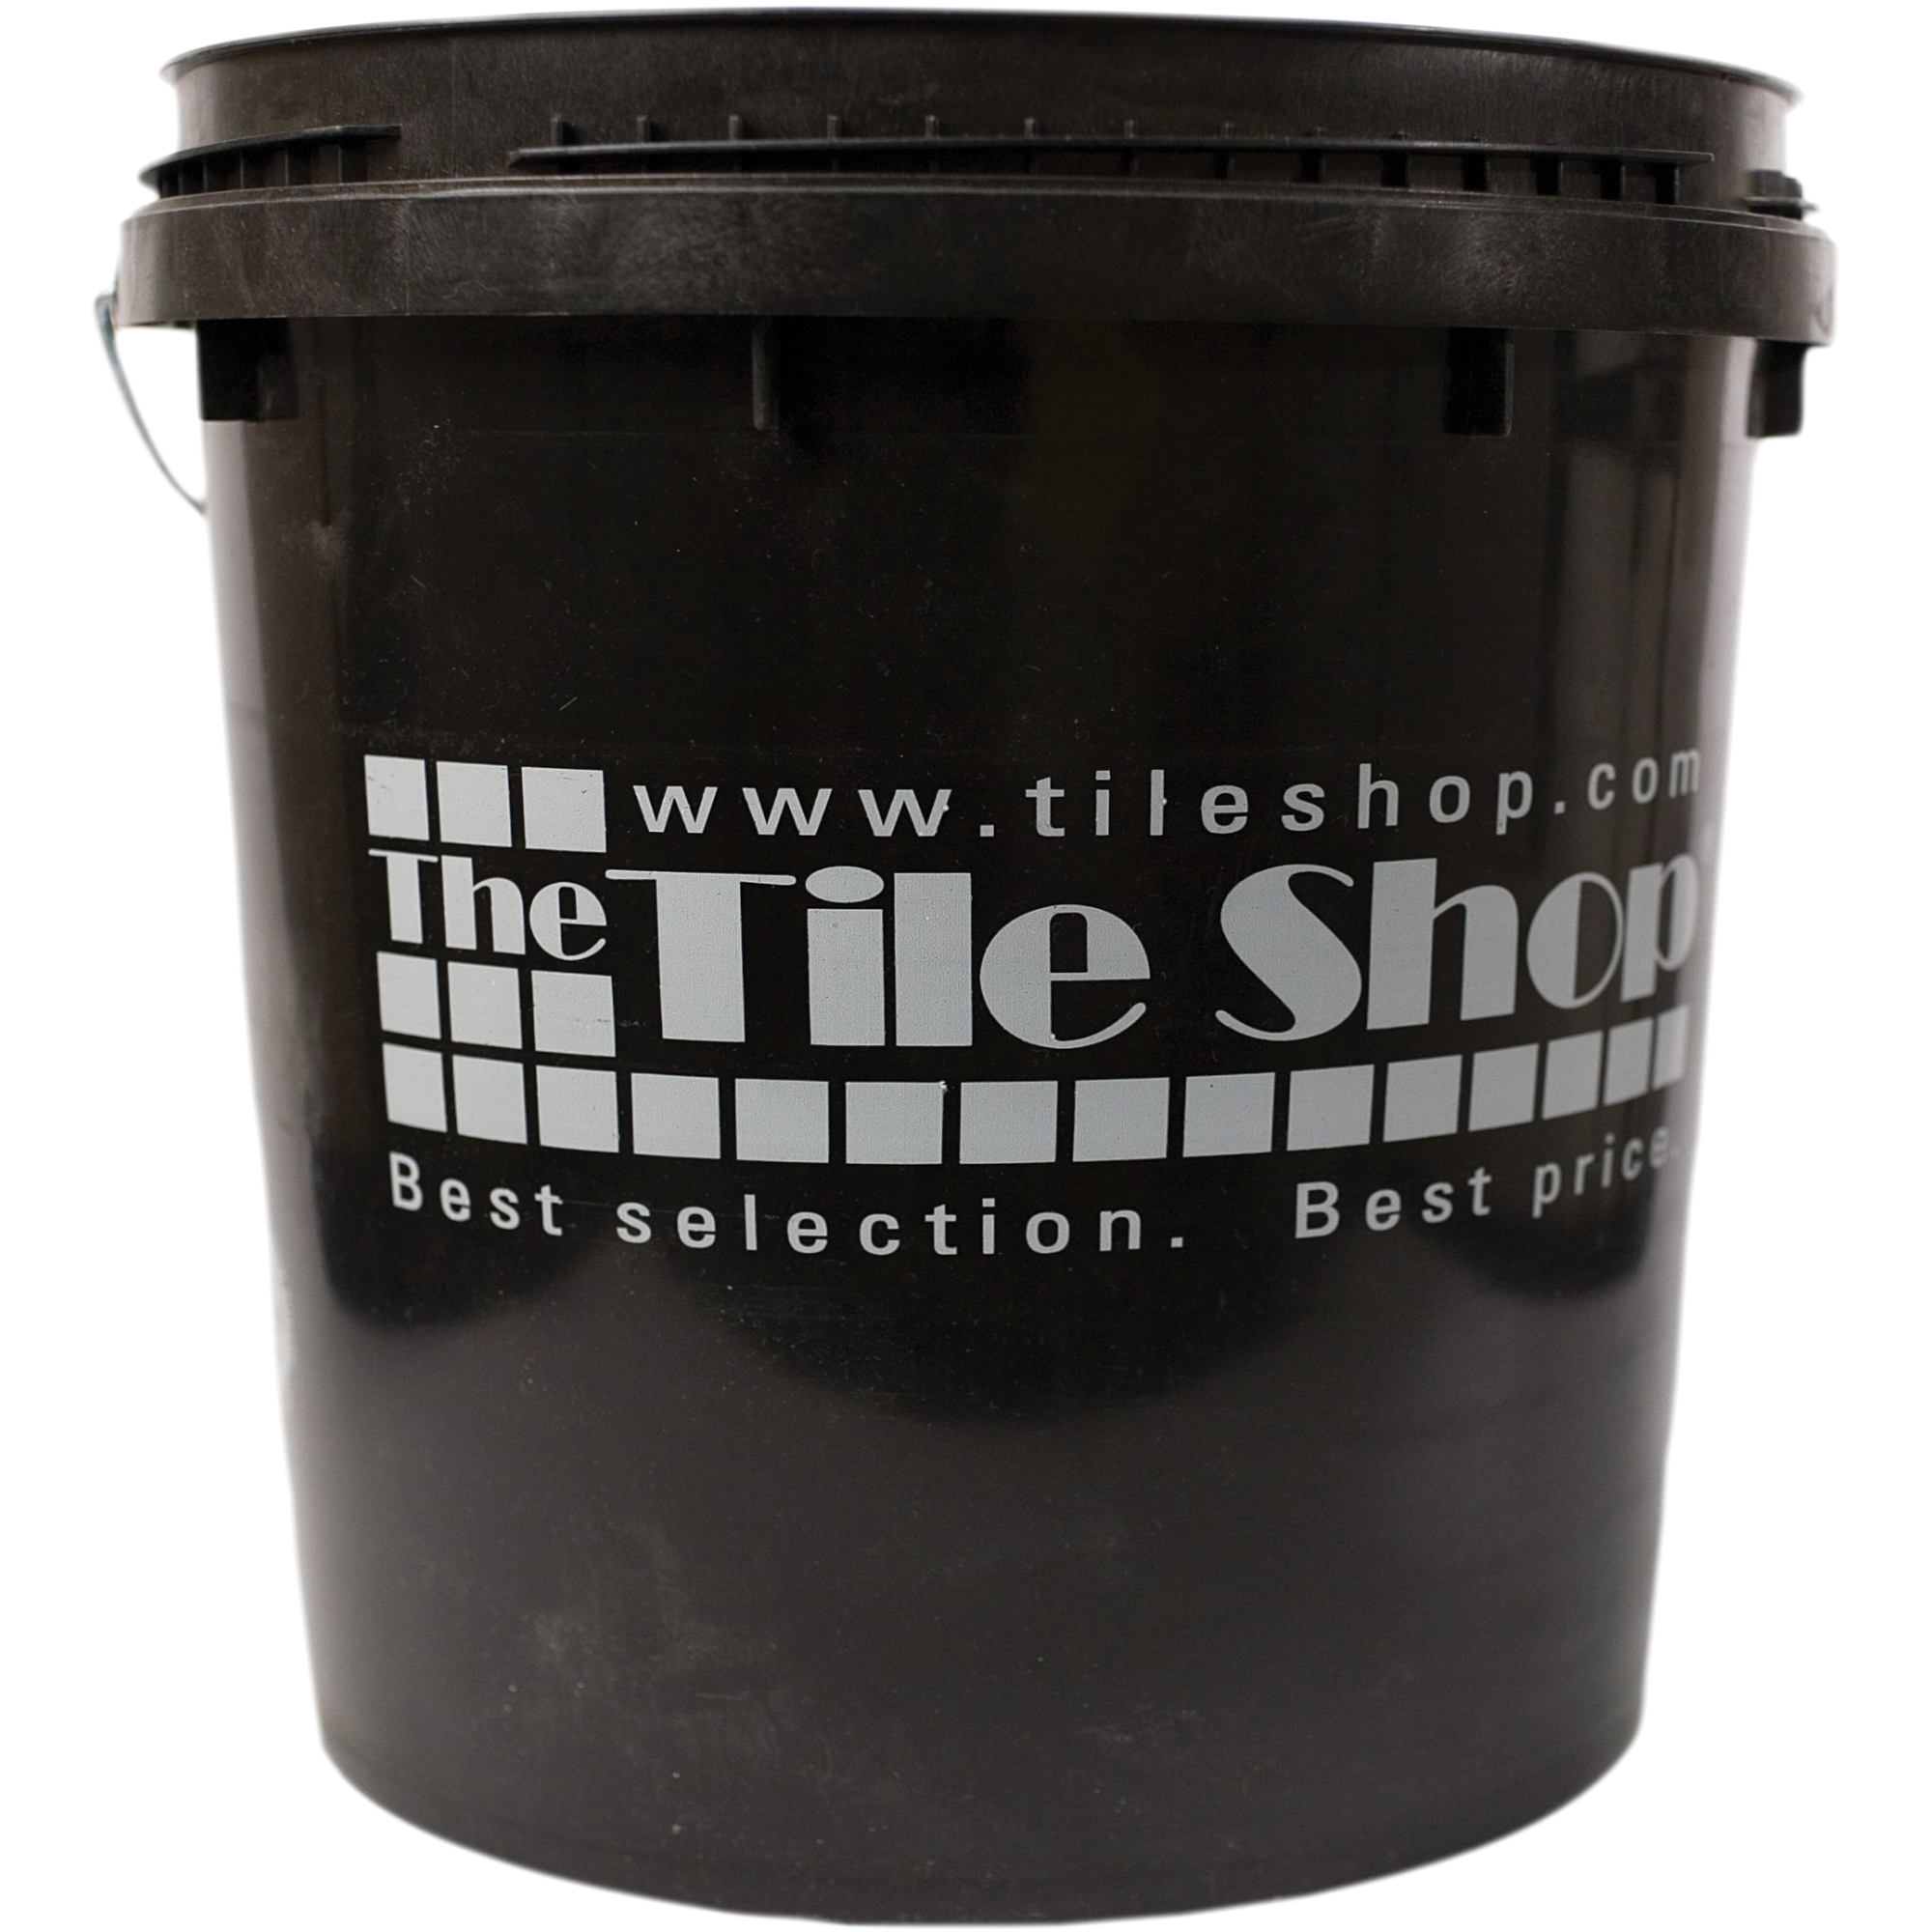 The Tile Shop Pail 3.5 Gallons